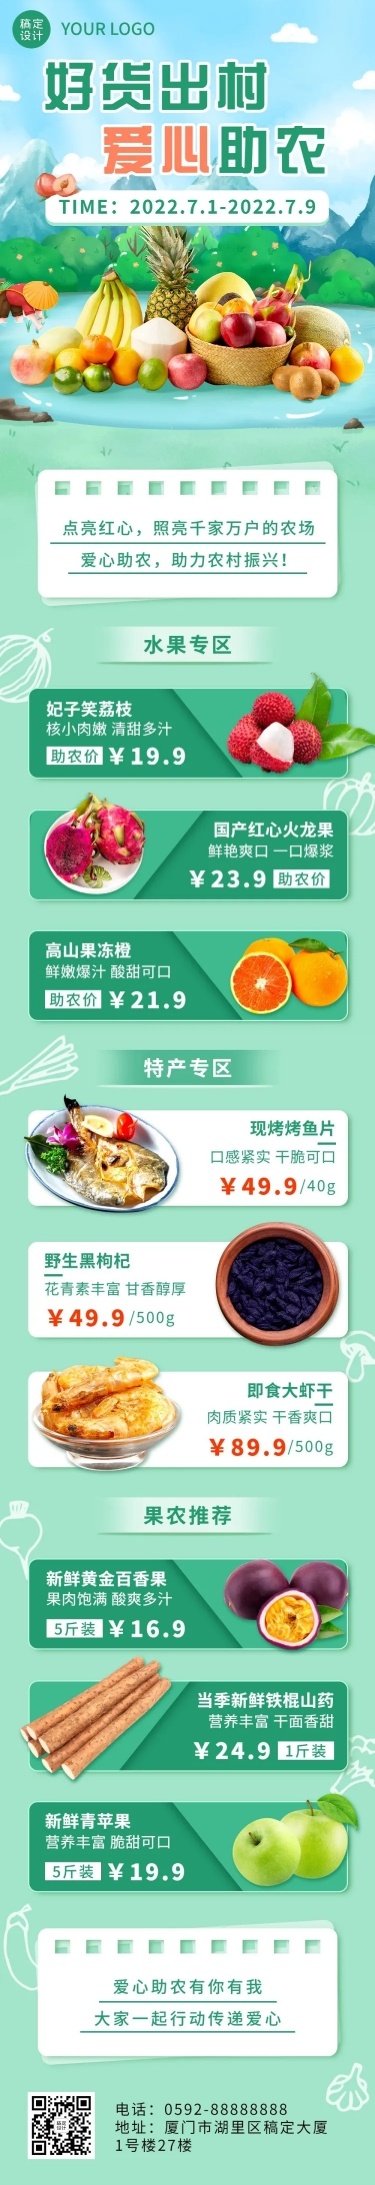 餐饮爱心助农新鲜水果产品活动插画文章长图